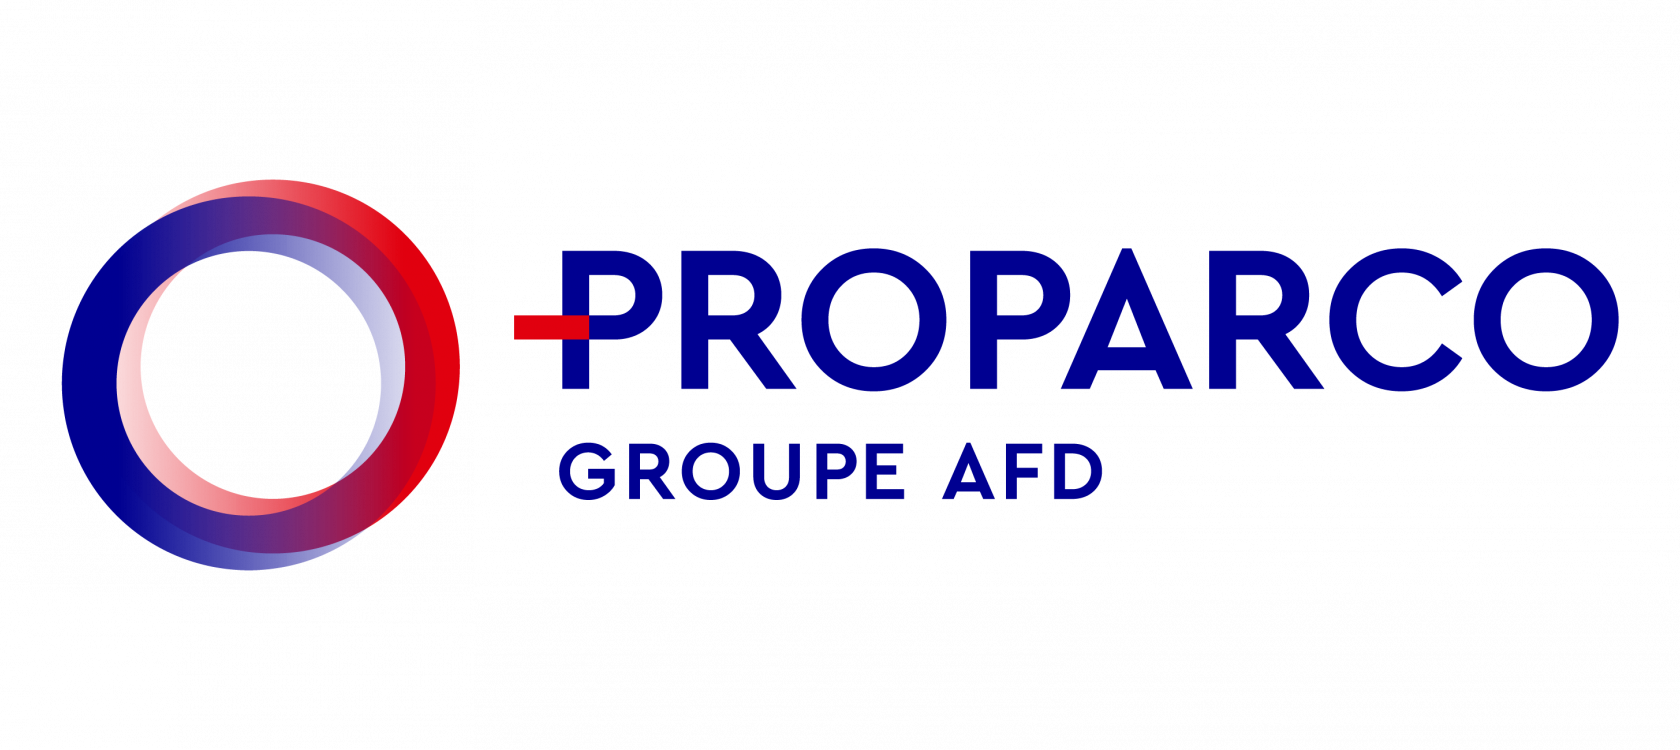 Un partenariat entre le groupe AFD et USAID pour attirer des capitaux privés en RDC